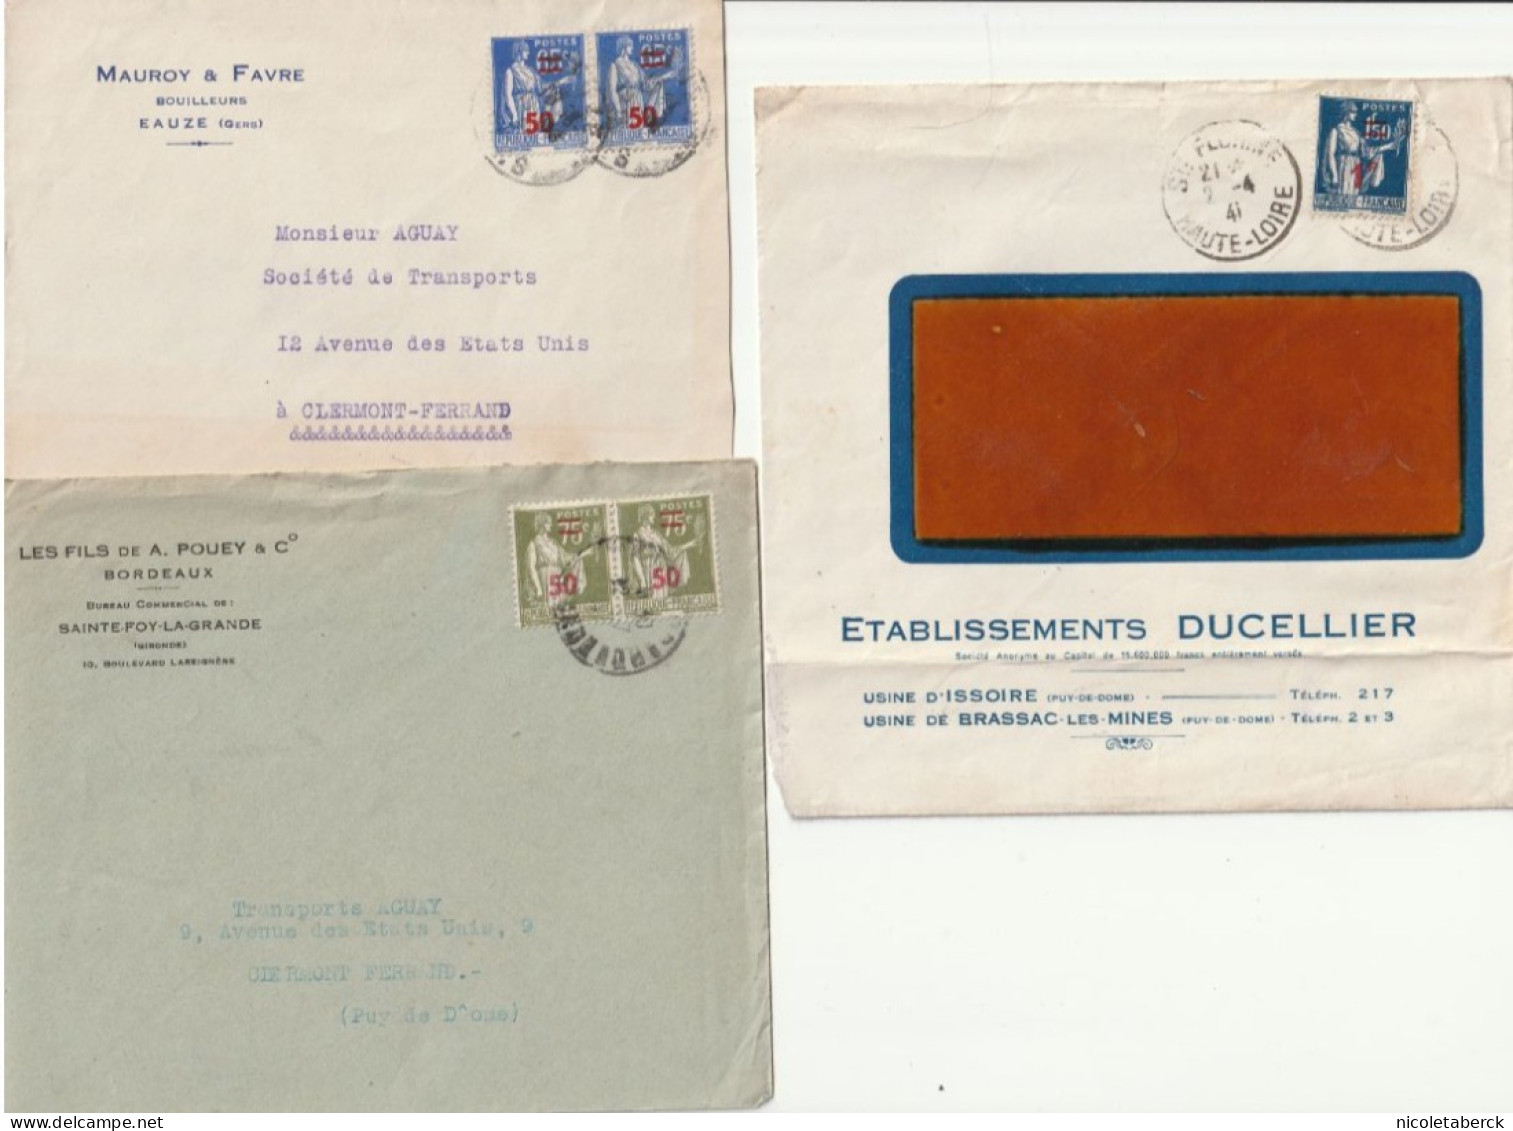 PAIX, N° 479/480/485 3 Lettres De 1941 Avec En-tête Publicitaire. - Storia Postale